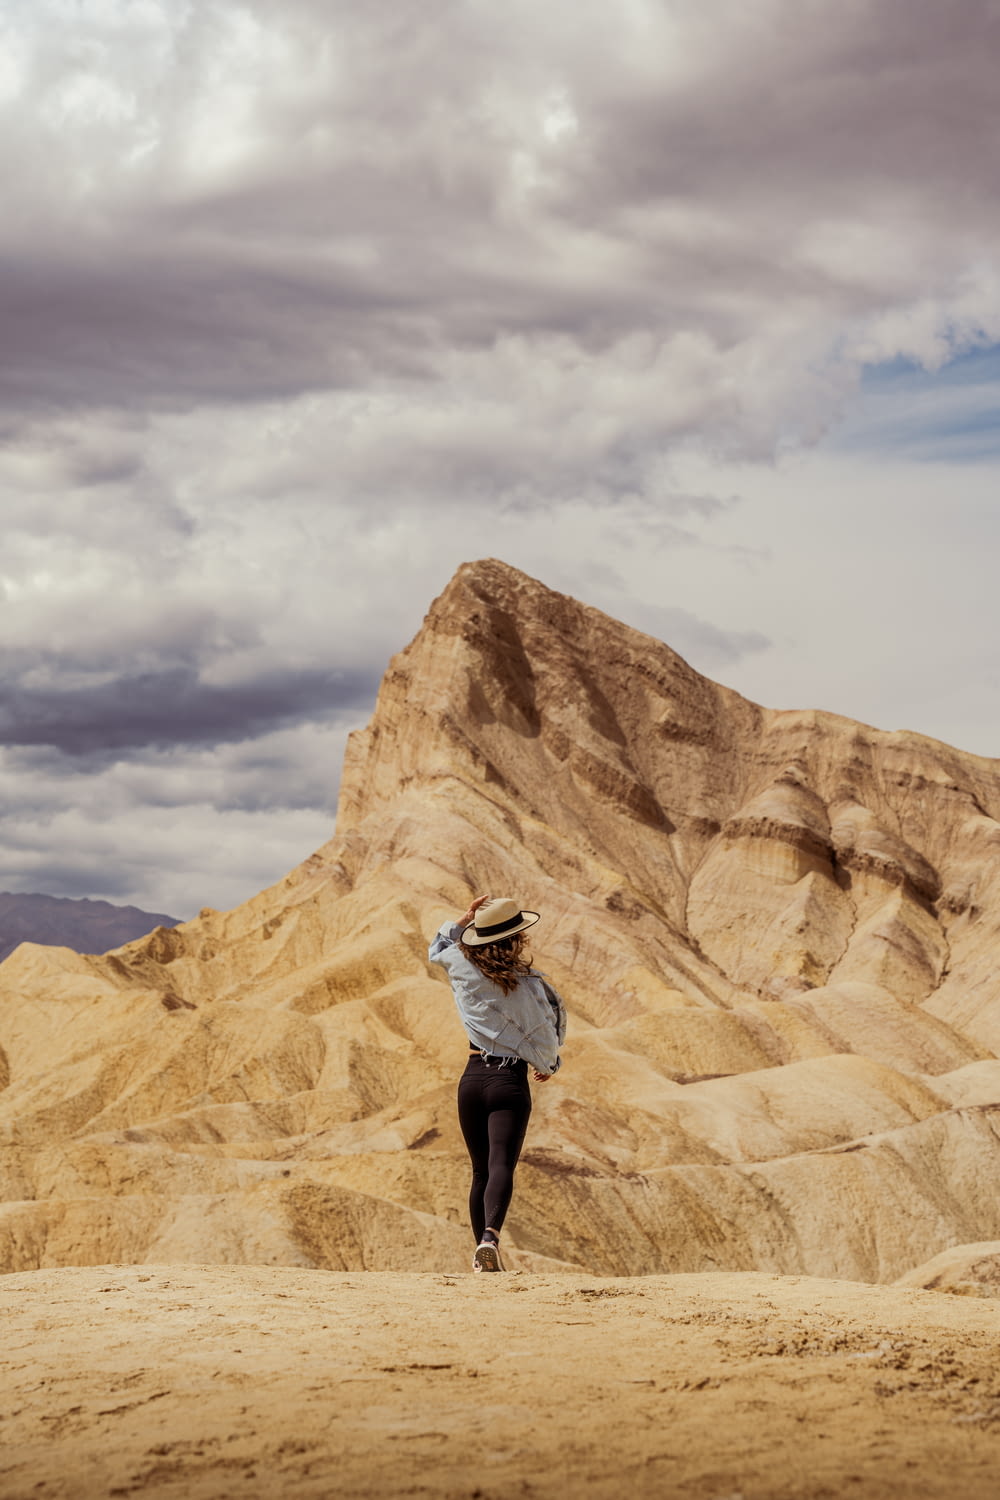 a woman in a hat is walking in the desert